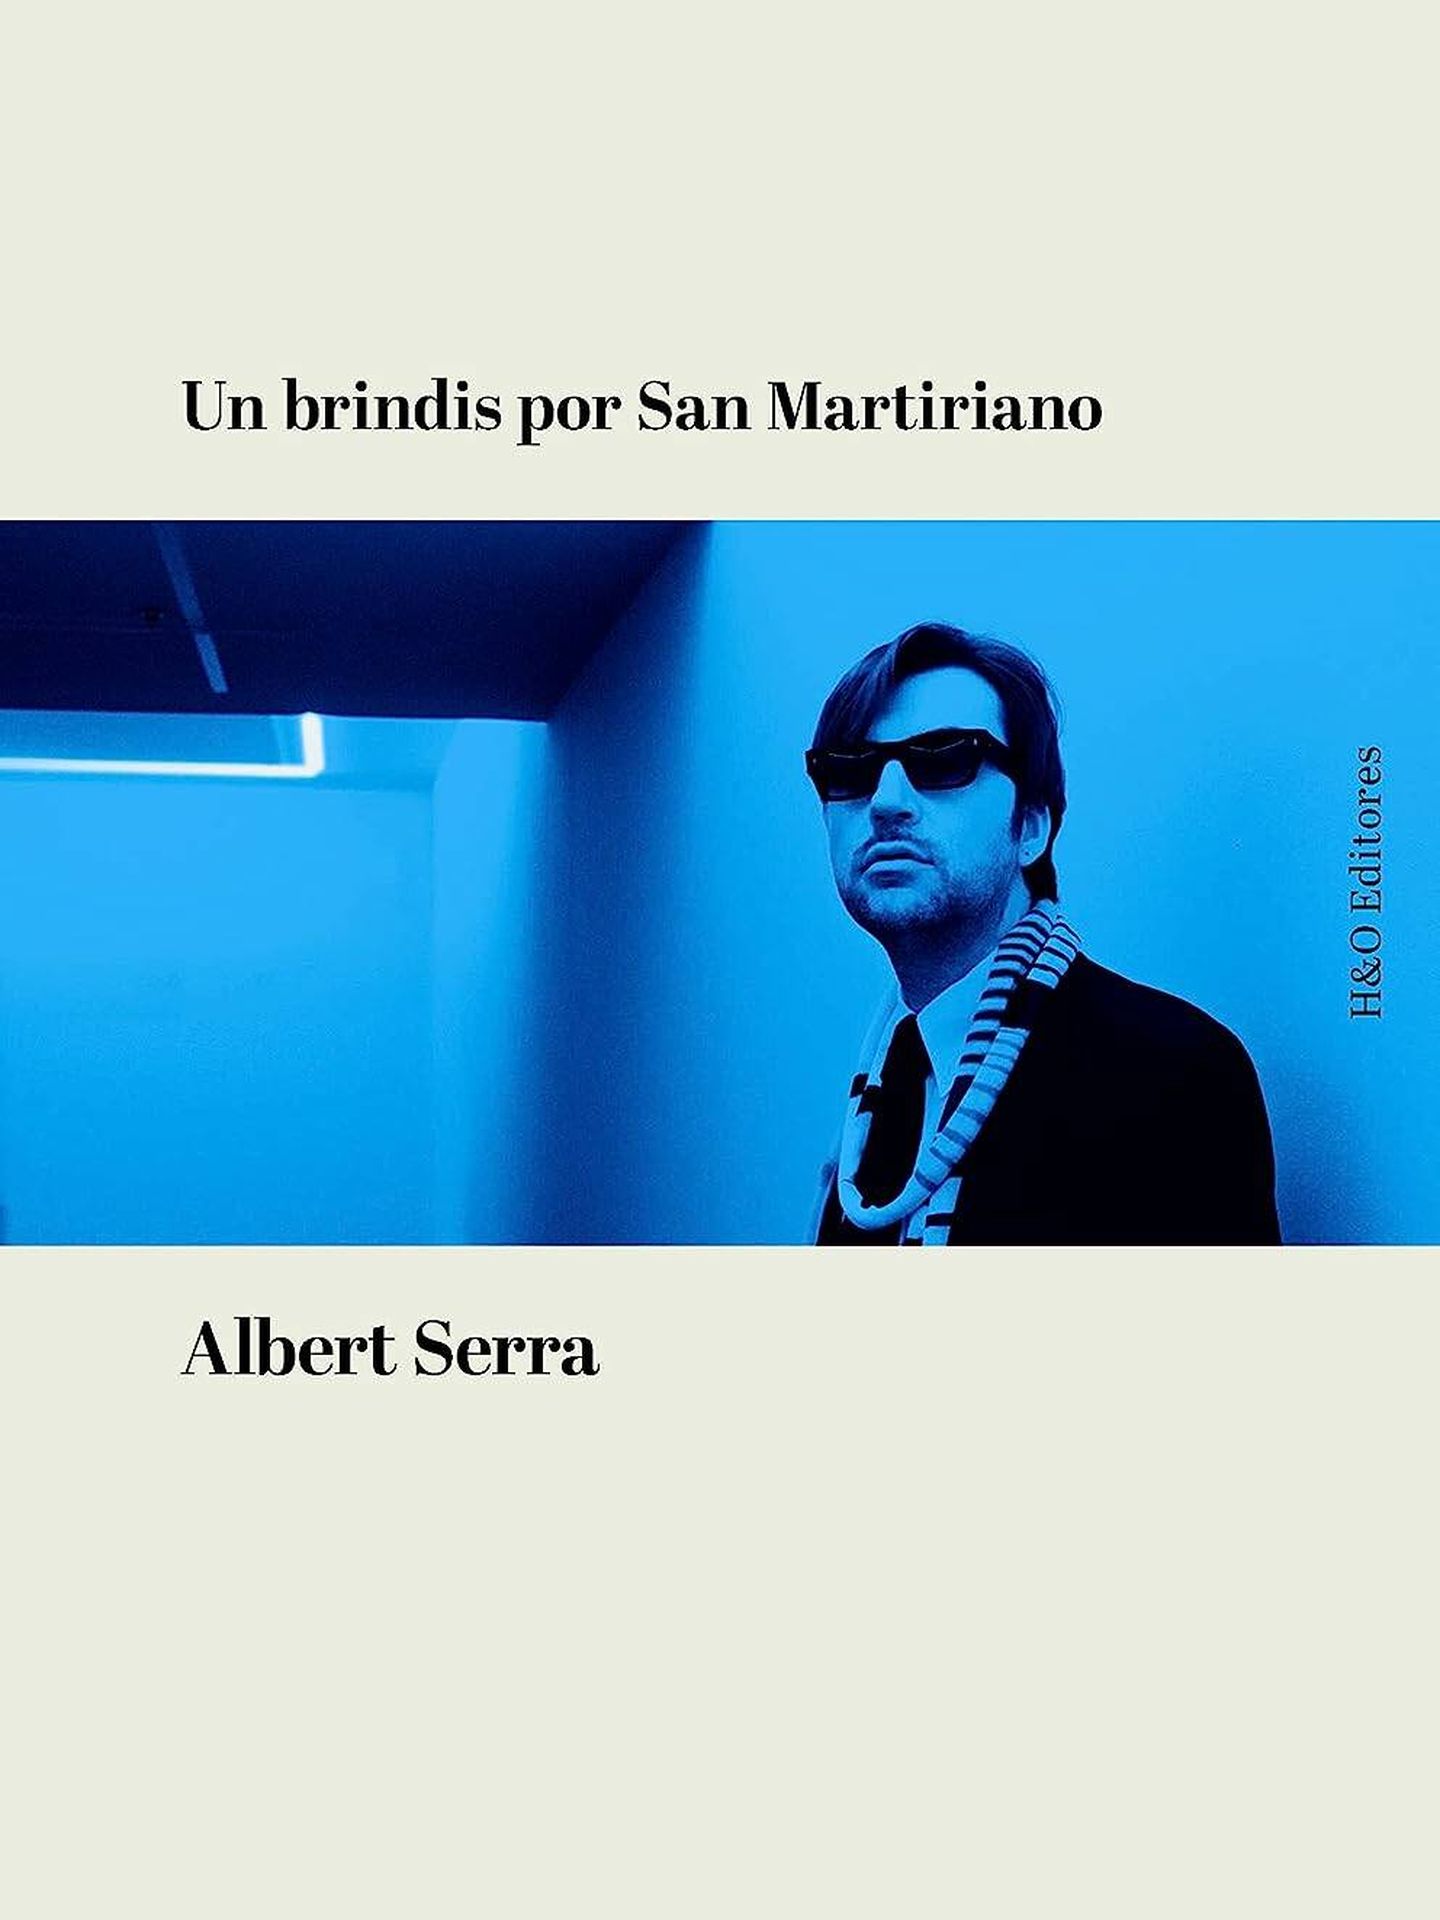 Portada de 'Un brindis por San Martiriano', del cineasta Albert Serra. 